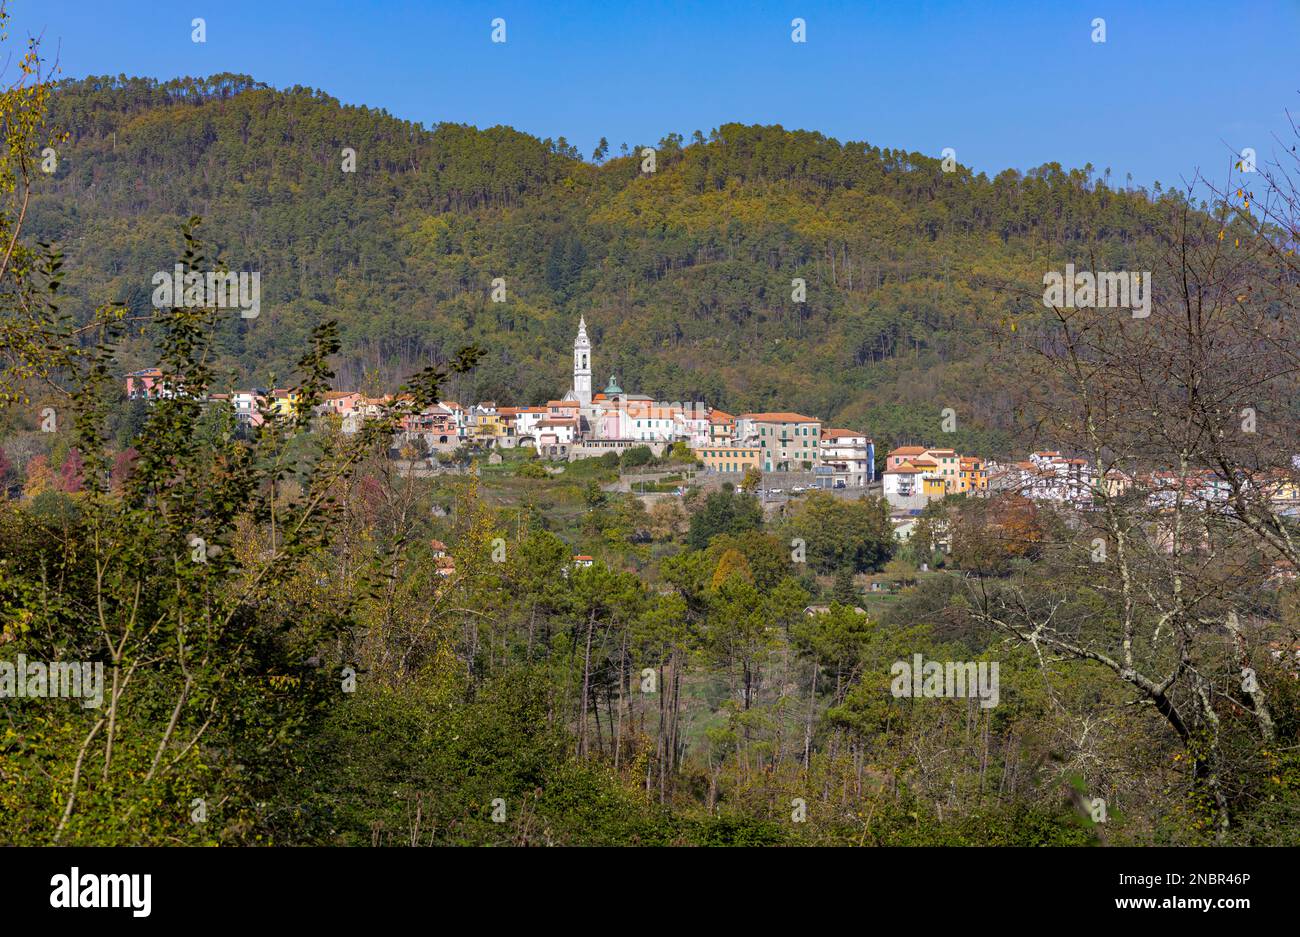 View of the small village of Carro, La Spezia Province, Italy Stock Photo